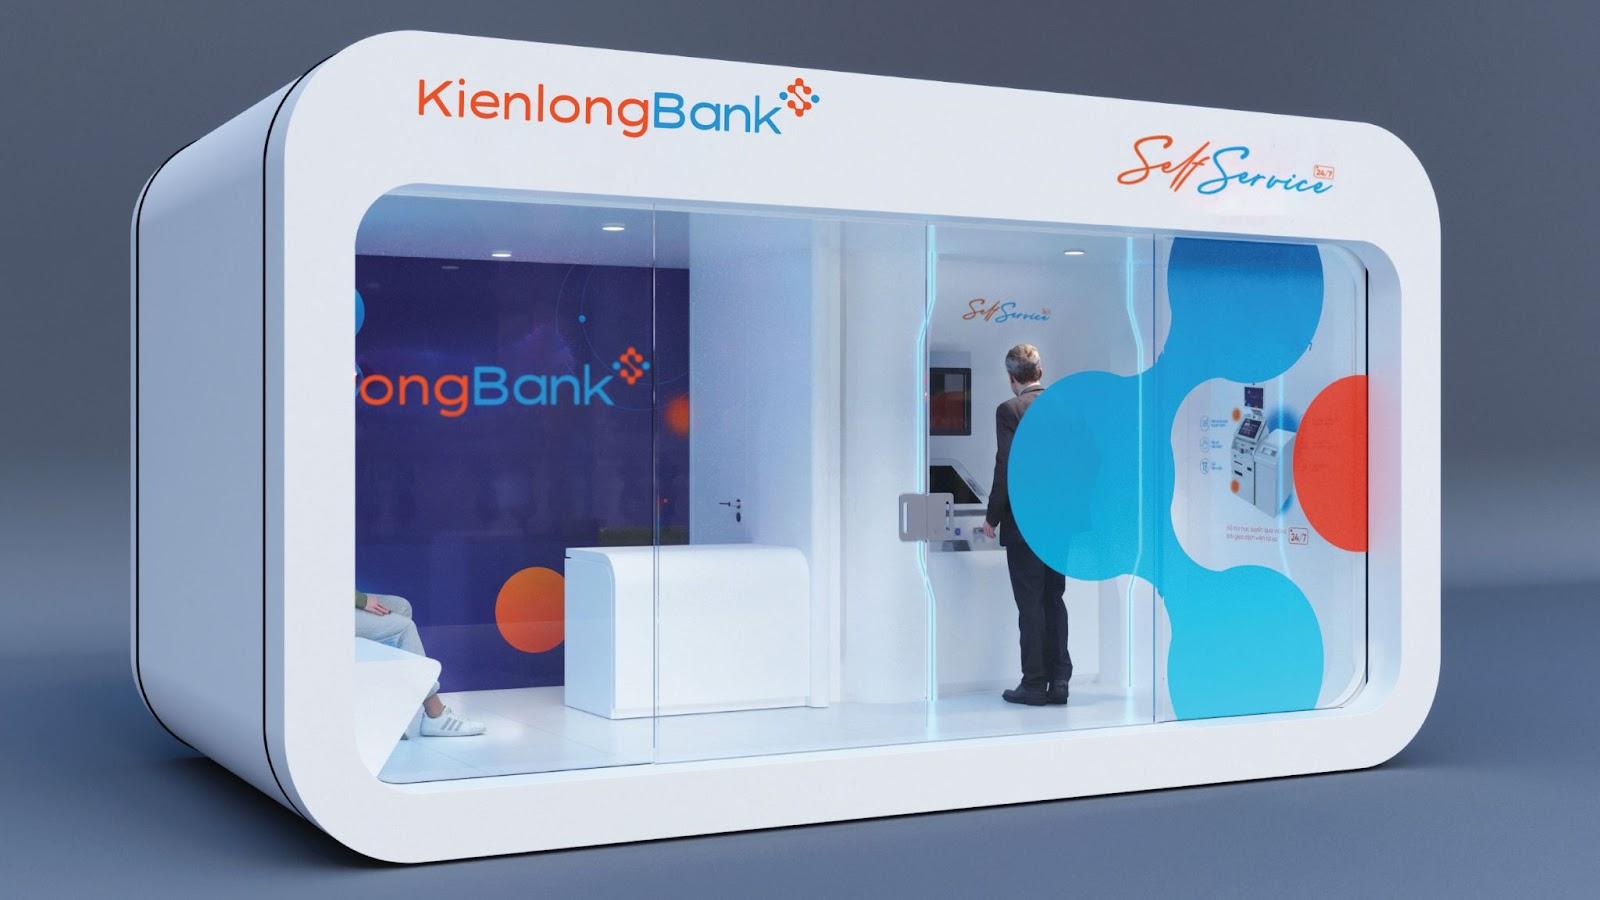 KienlongBank hỗ trợ vùng sâu, vùng xa các hoạt động giáo dục và tác vụ ngân hàng, dịch vụ công - Ảnh 8.